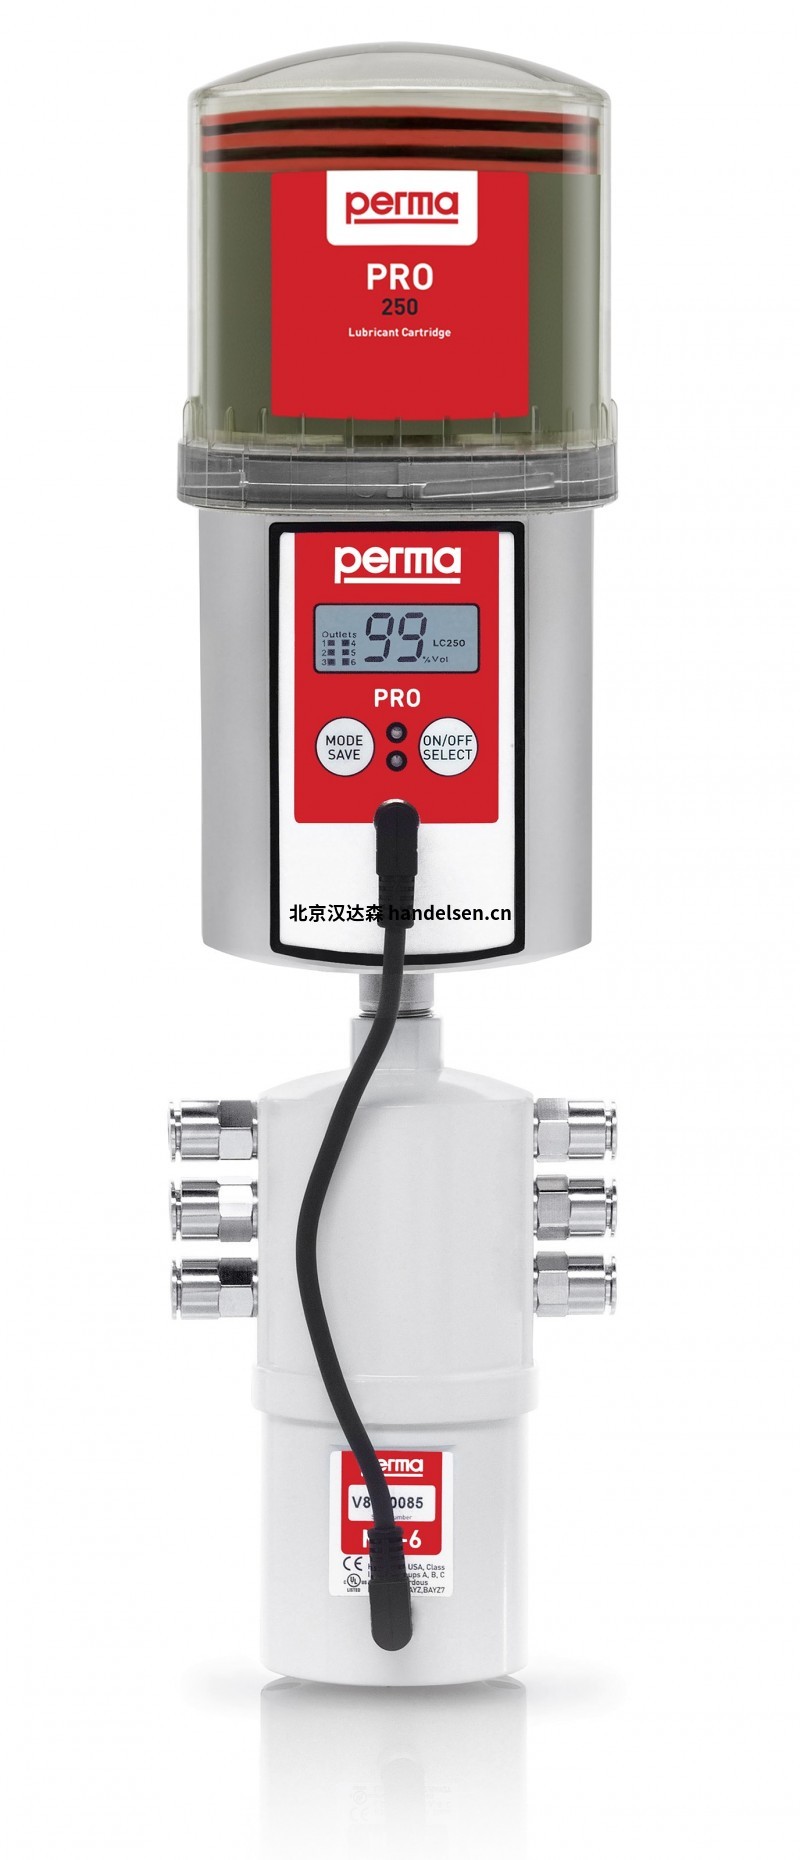 perma注油器润滑系统产品介绍